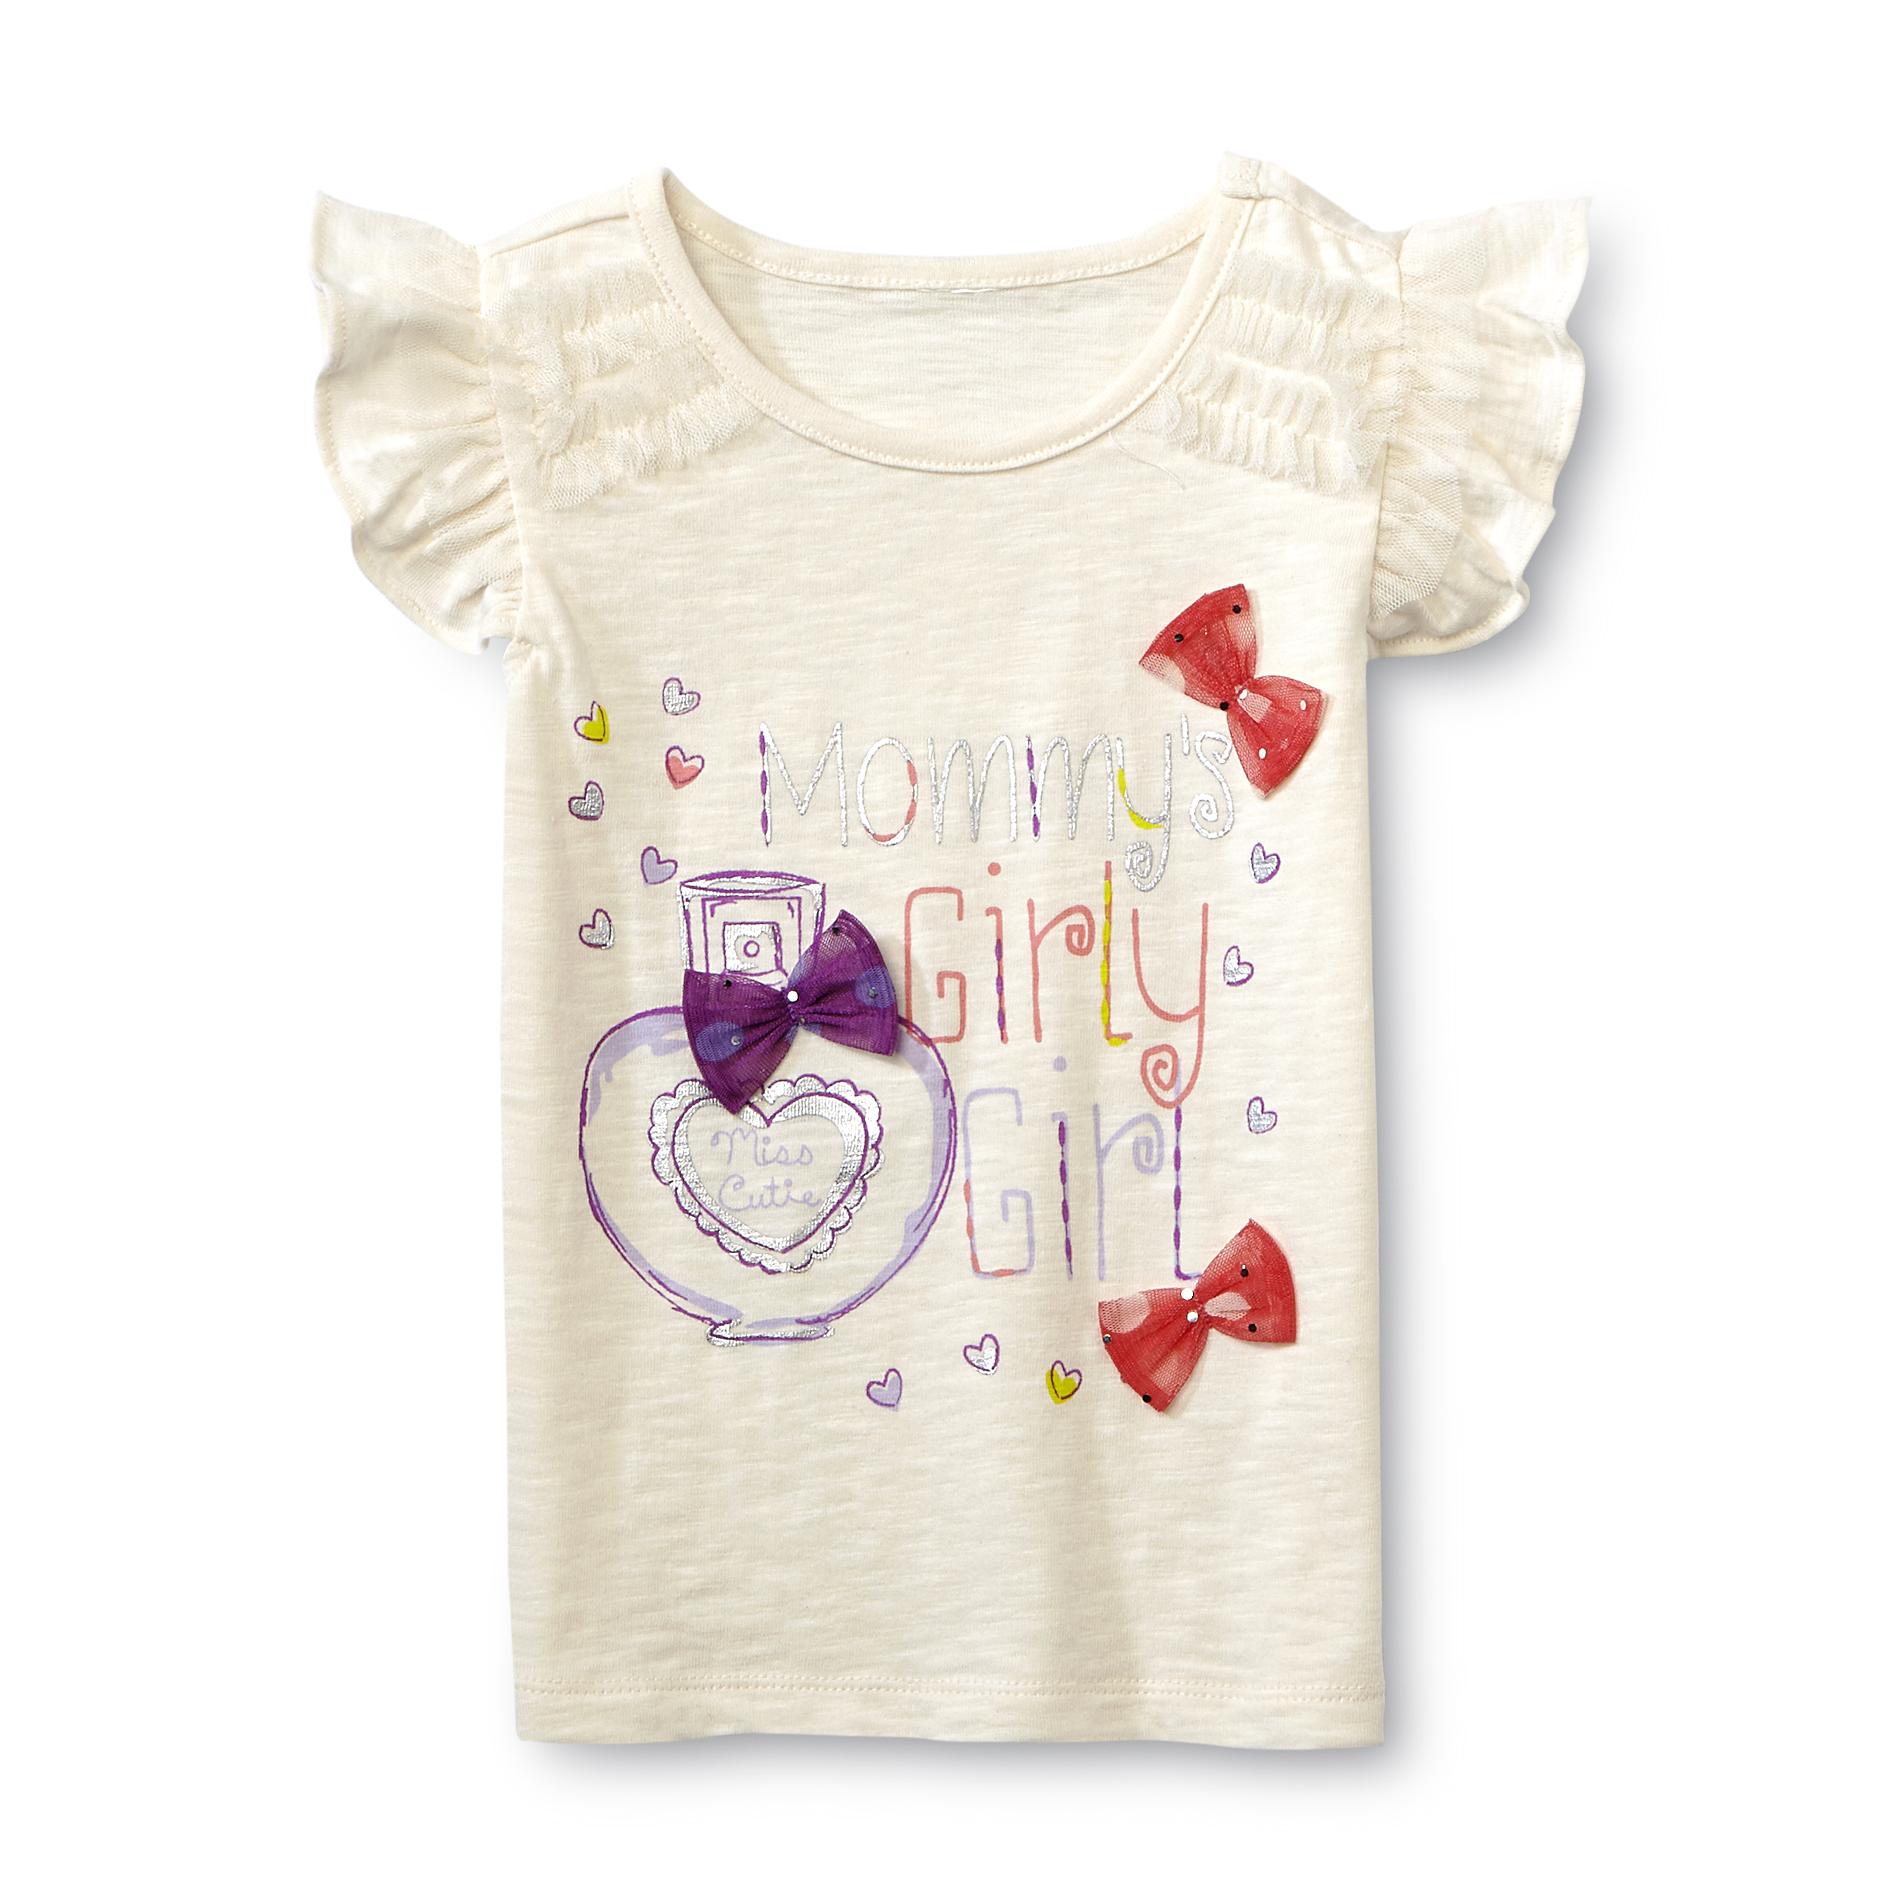 WonderKids Infant & Toddler Girl's Graphic T-Shirt - Mommy's Girly Girl